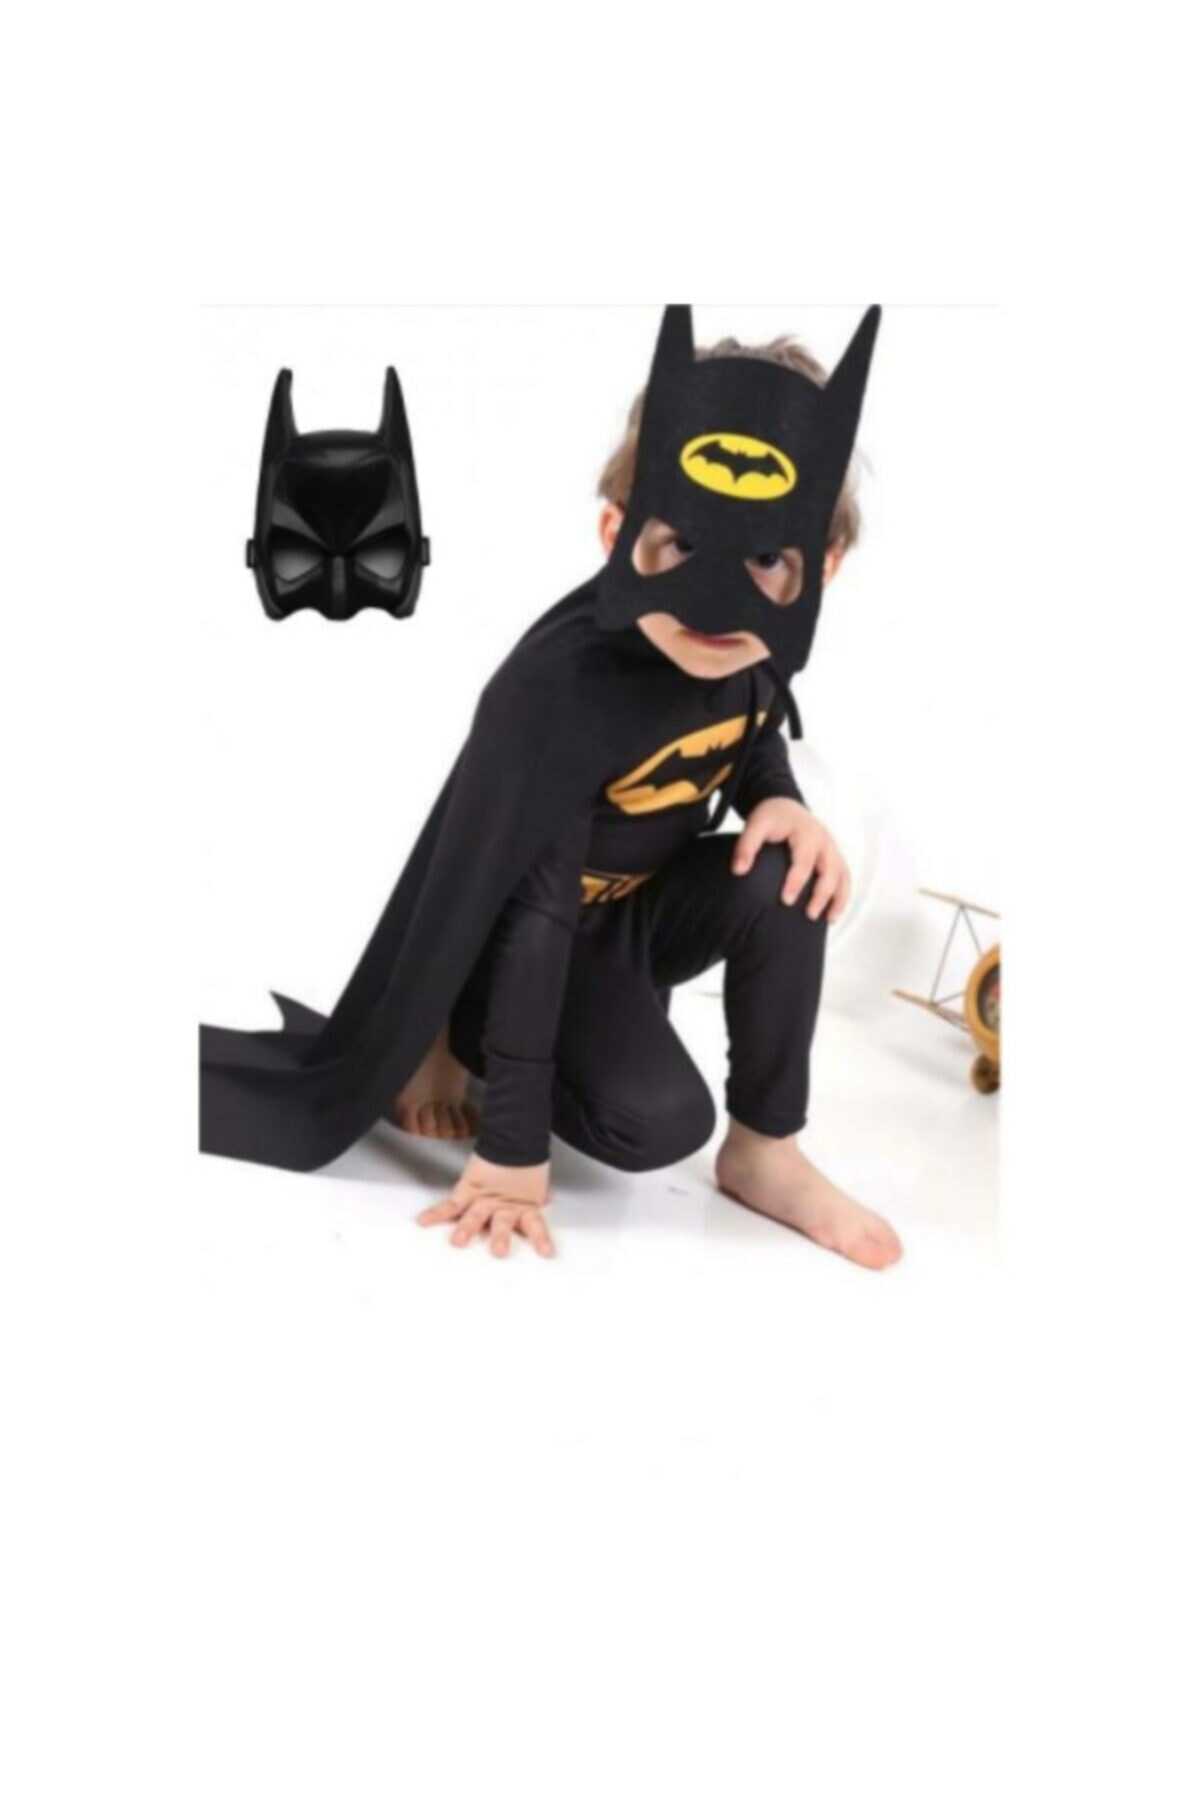 لباس سرهمی بچه گانه بتمن همراه نقاب مشکی برند Batman